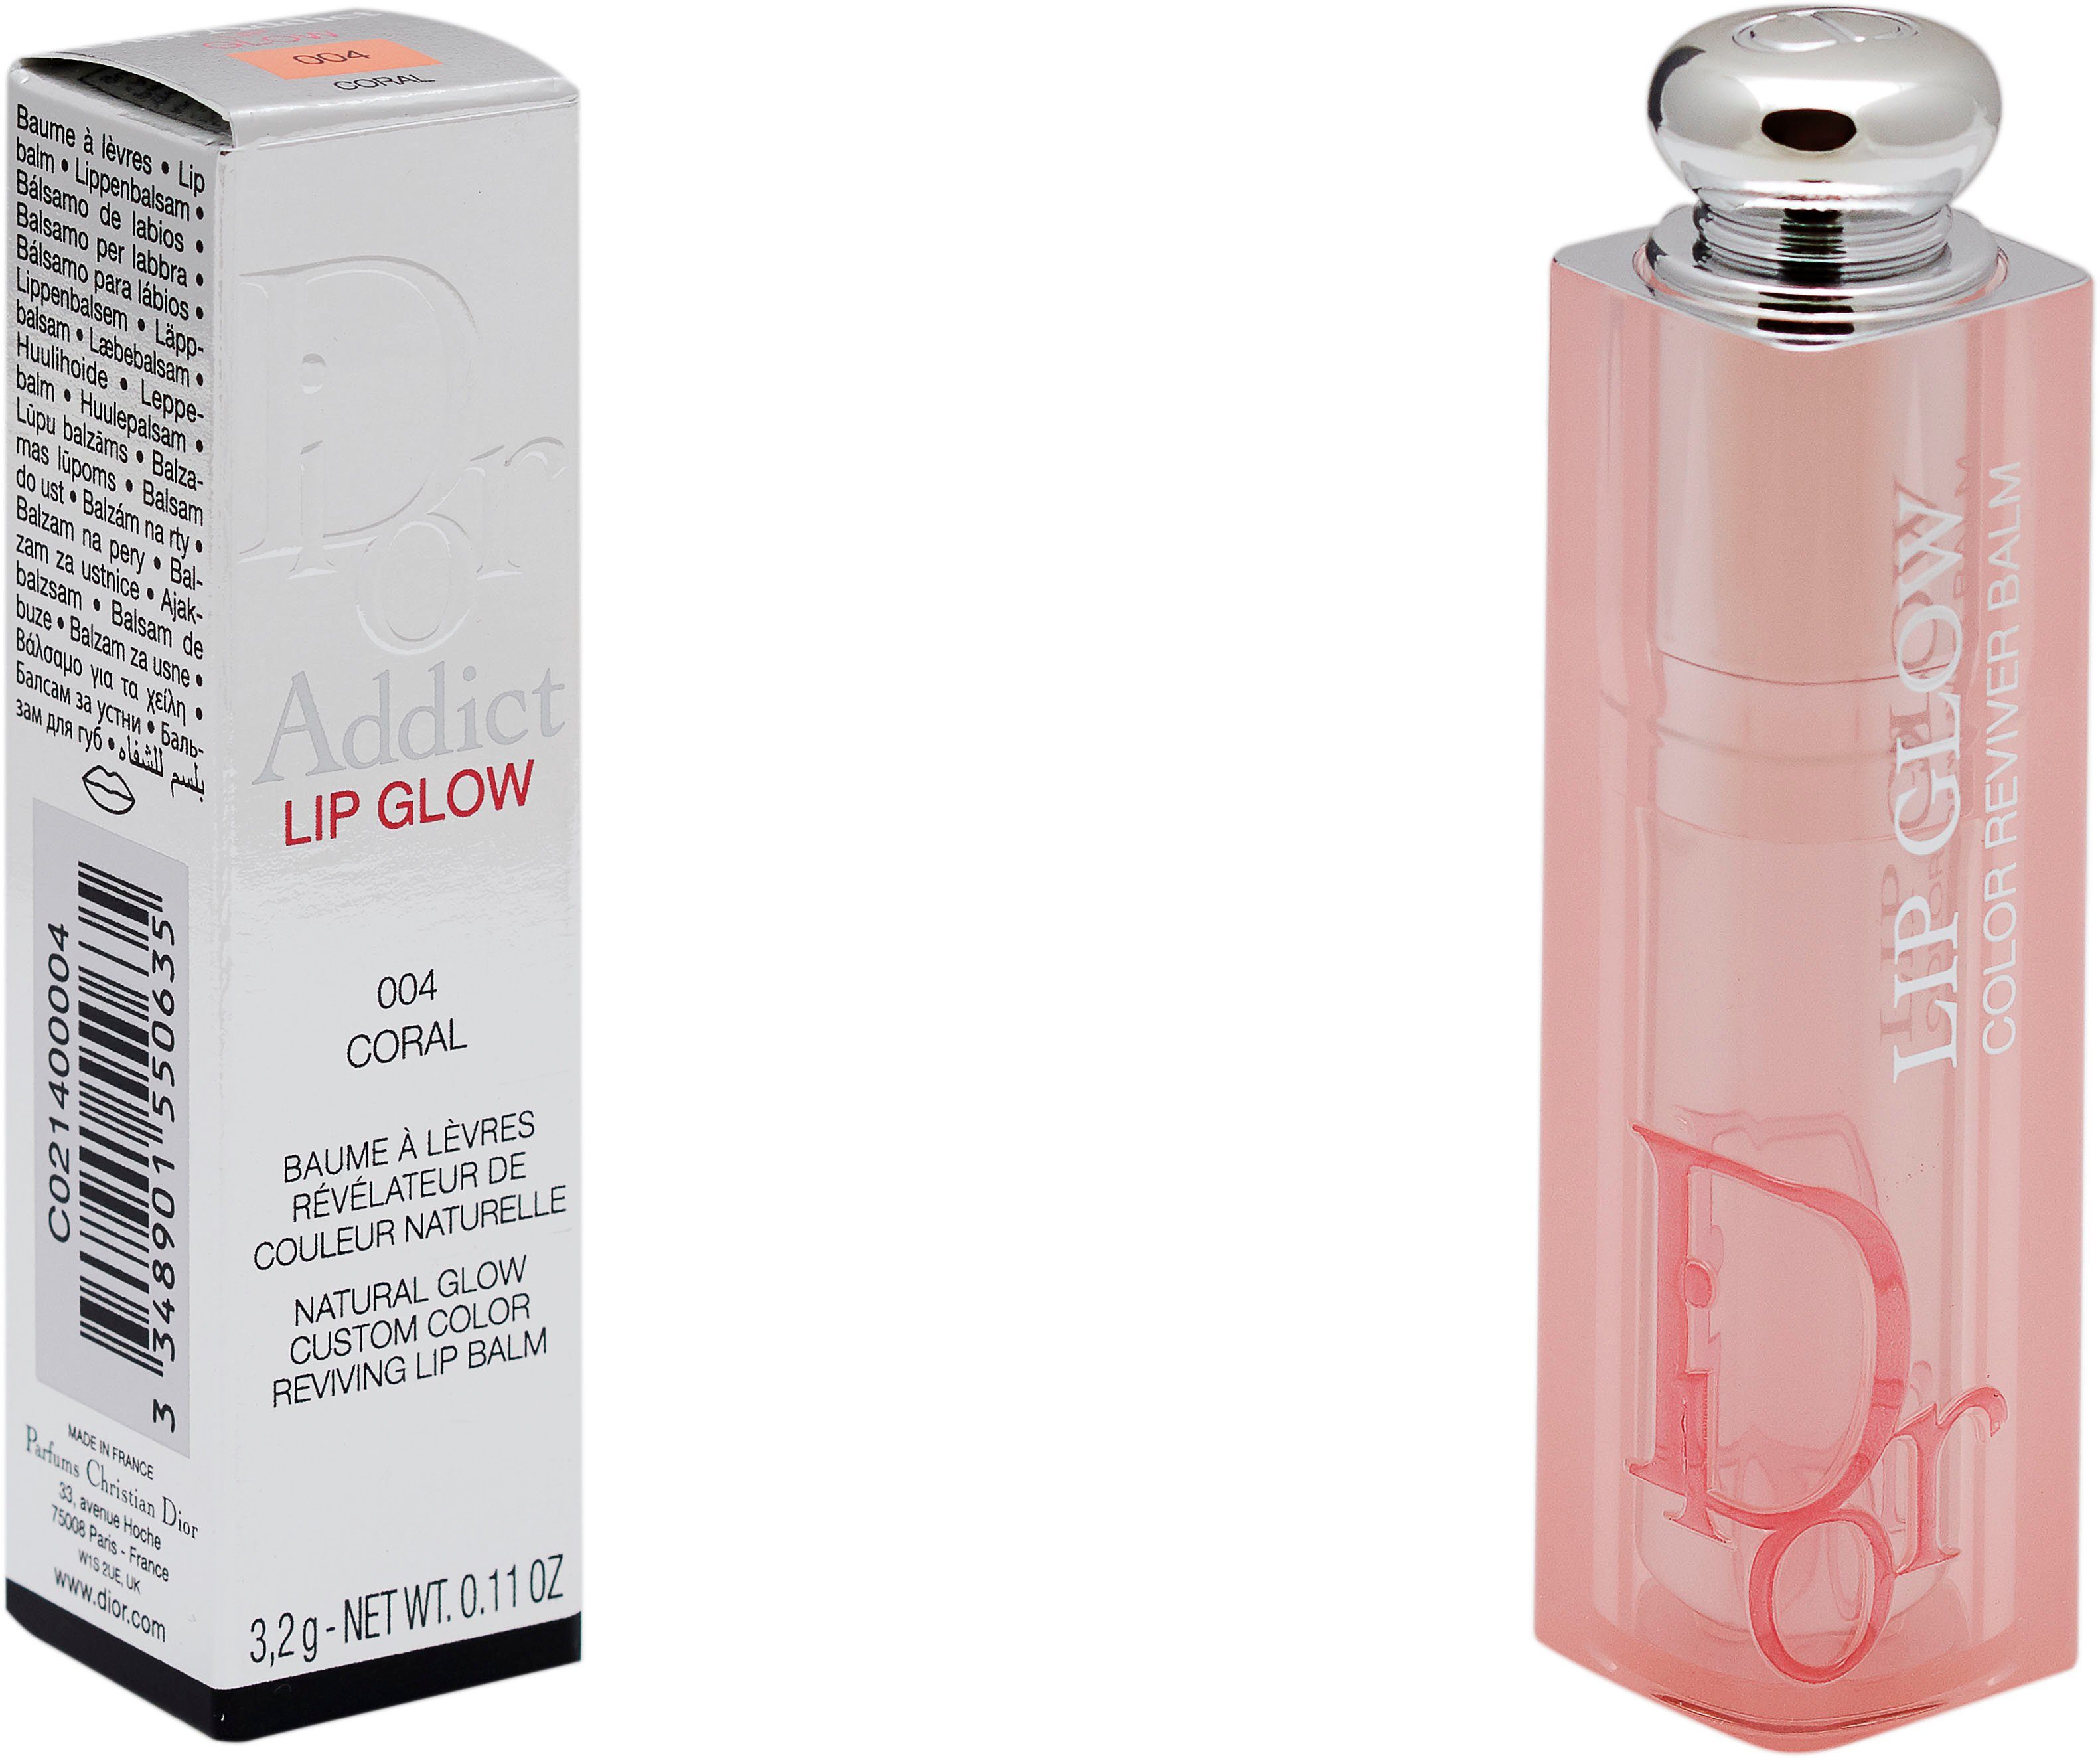 Dior Lippenbalsam Dior Addict Lip Glow 004 Coral